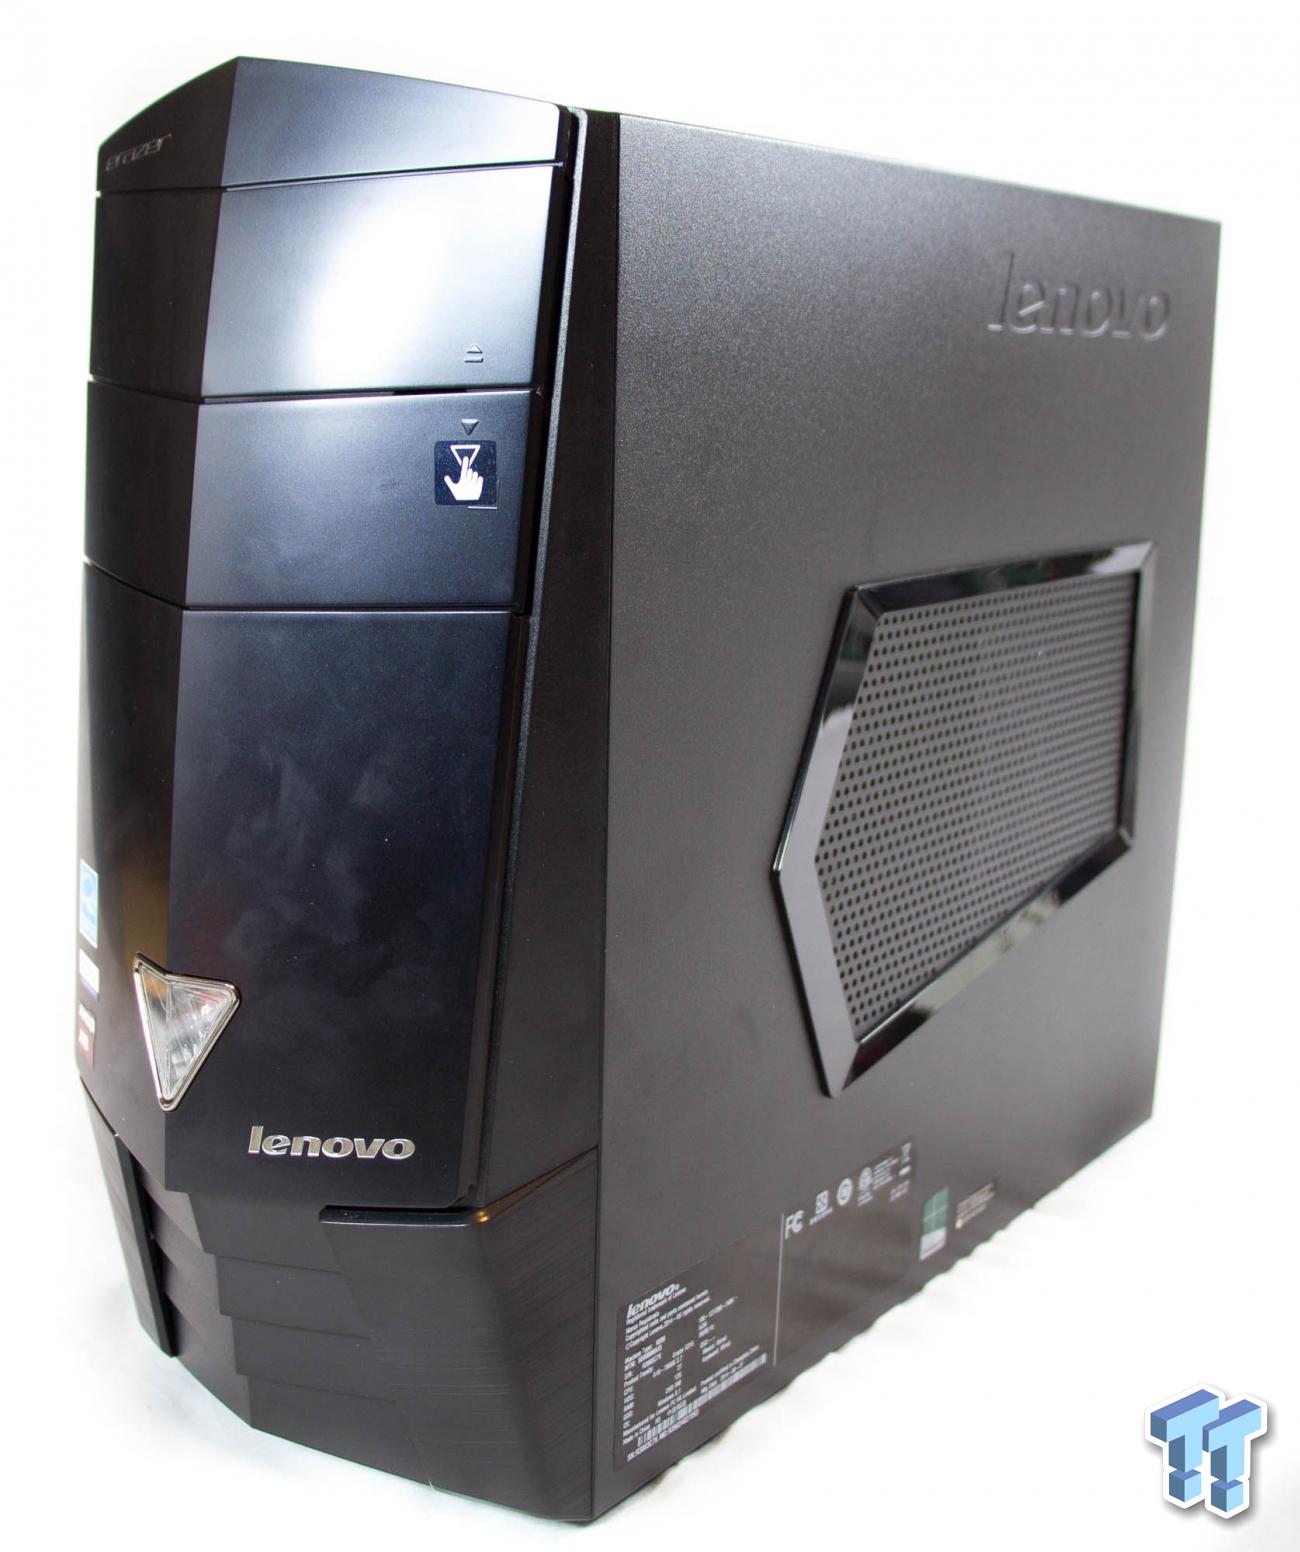 Lenovo Erazer X315 PC Review